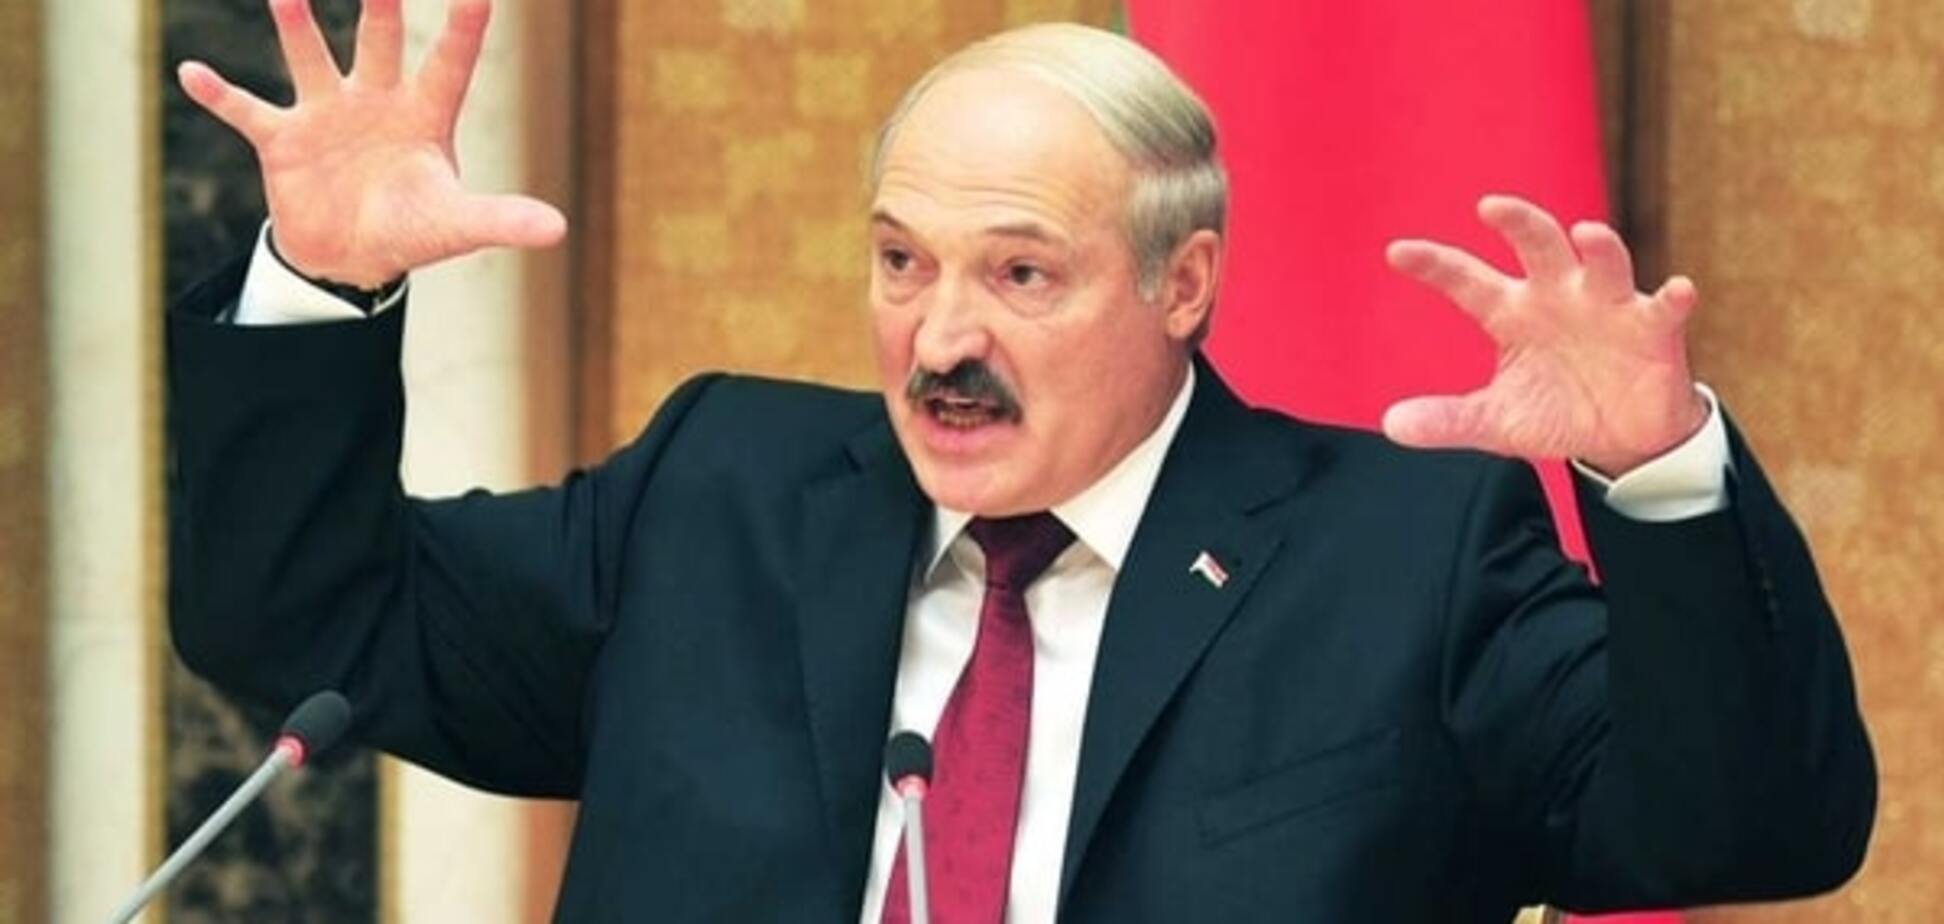 Хватит телепаться! Лукашенко поставил ультиматум белорусским спортсменам